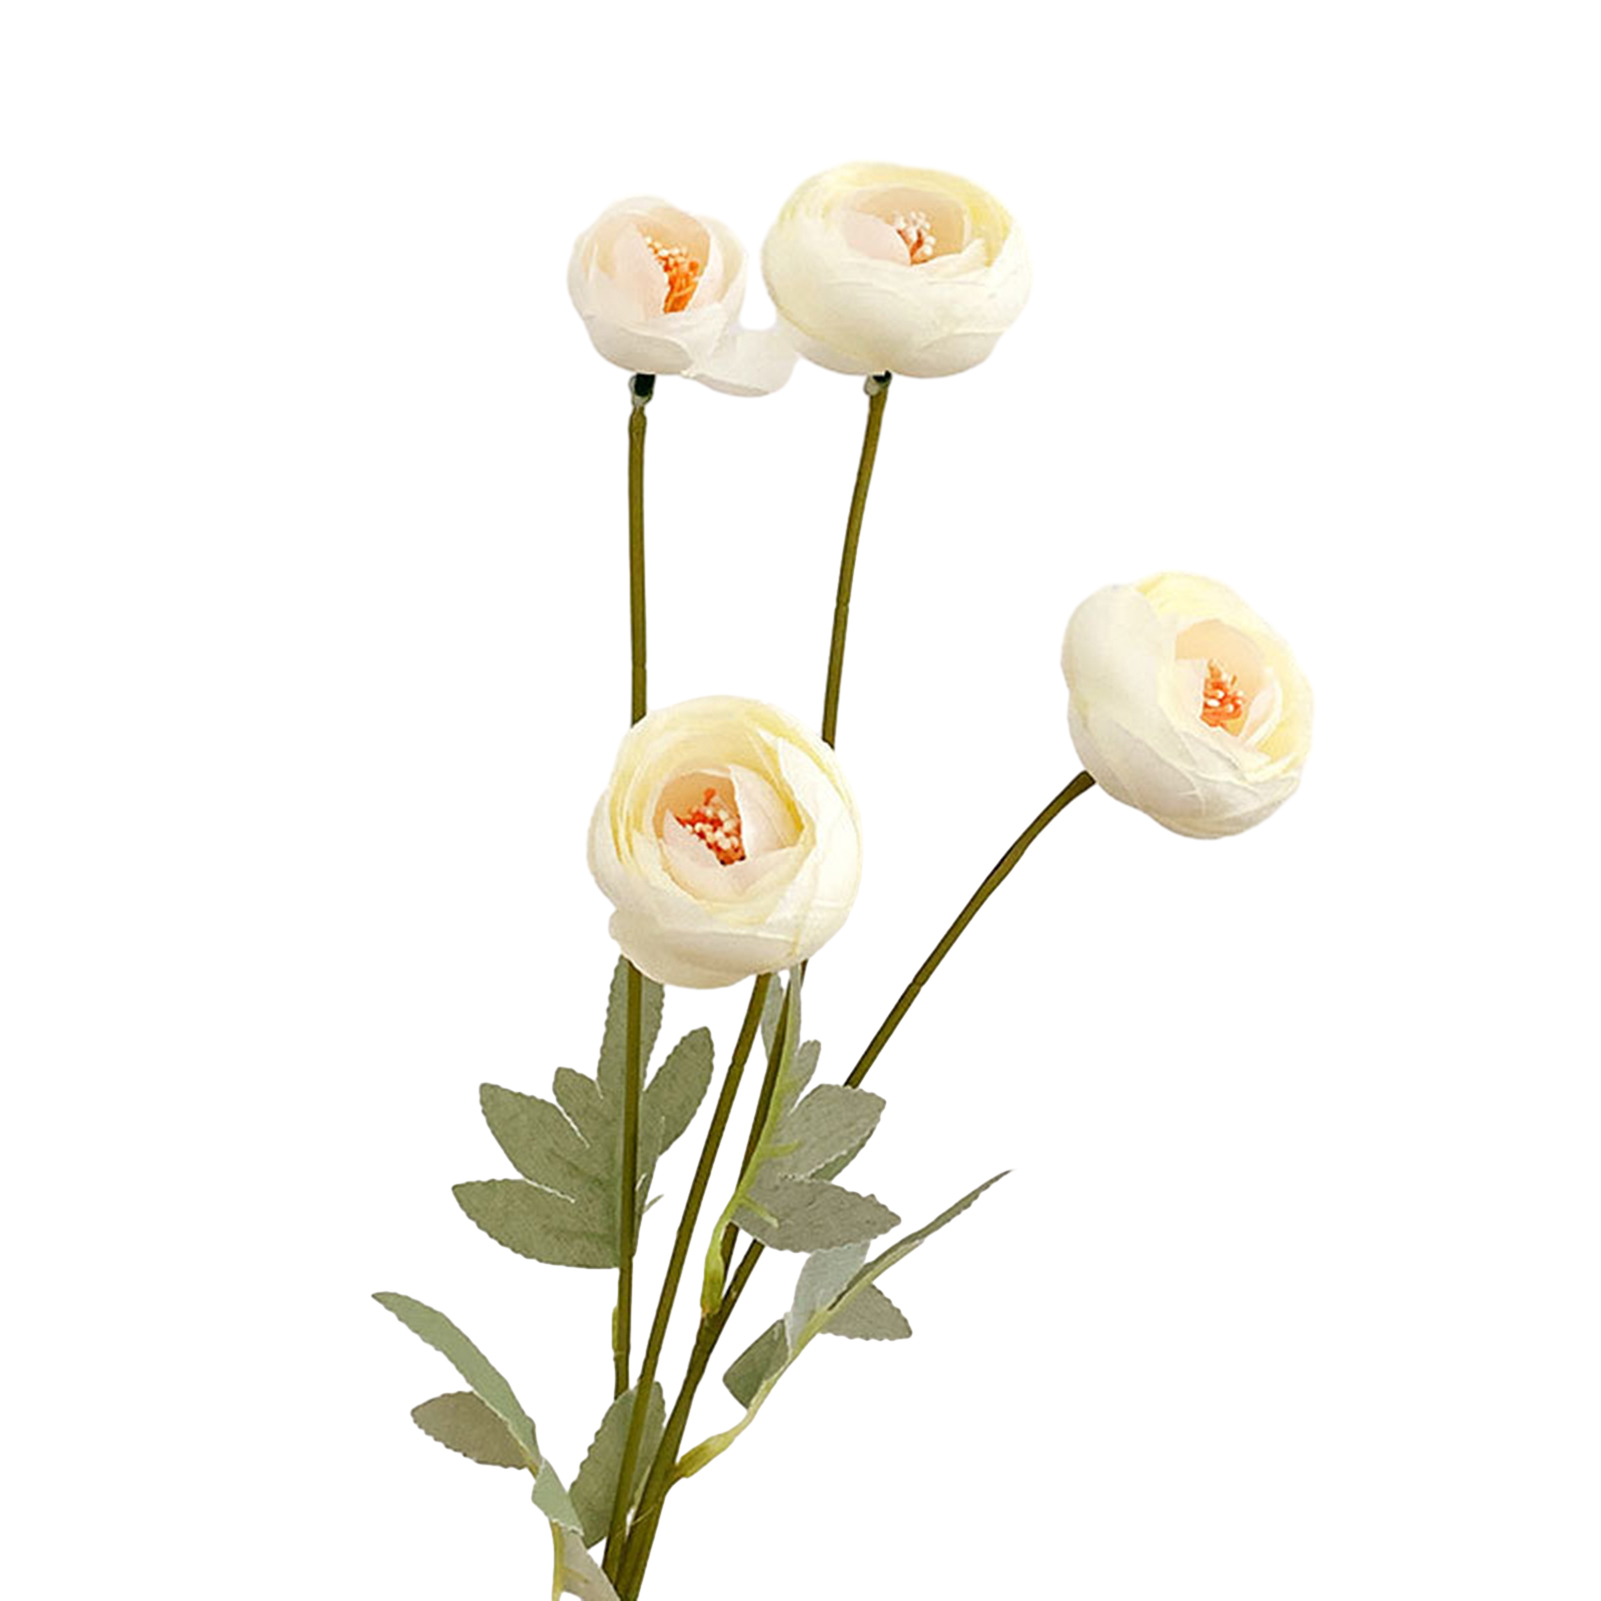 Sparen hoa giả cho sử dụng ngoài trời bền hoa nhựa thực tế không phai hoa giả cho đám cưới 4 người đứng đầu sương sen hoa trà duy trì mức độ thấp